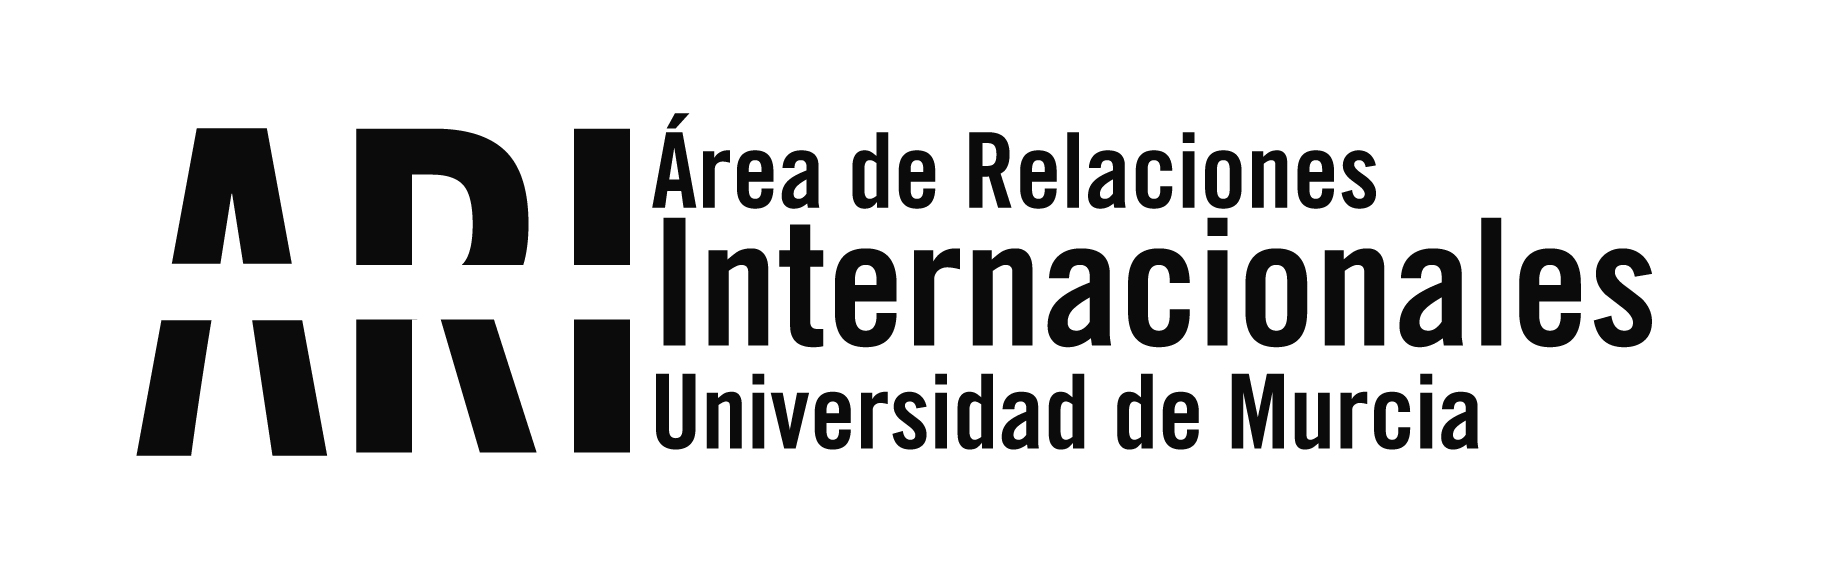 La Clínica Jurídica de la UMU participa en el examen que la ONU hace a España sobre derechos humanos - Área de Relaciones Internacionales